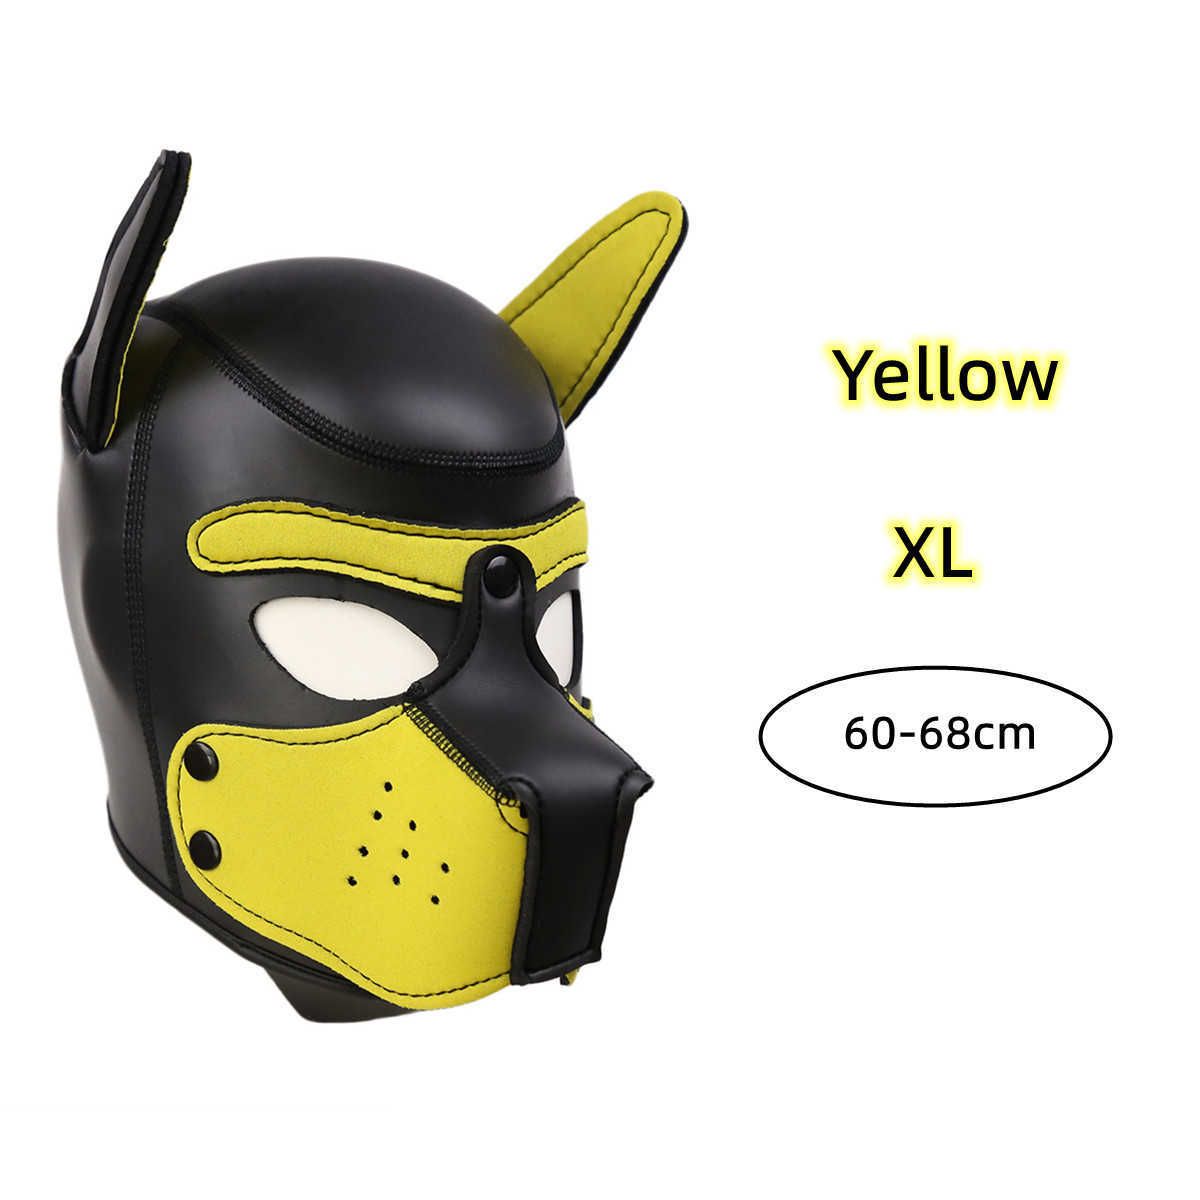 الأصفر XL